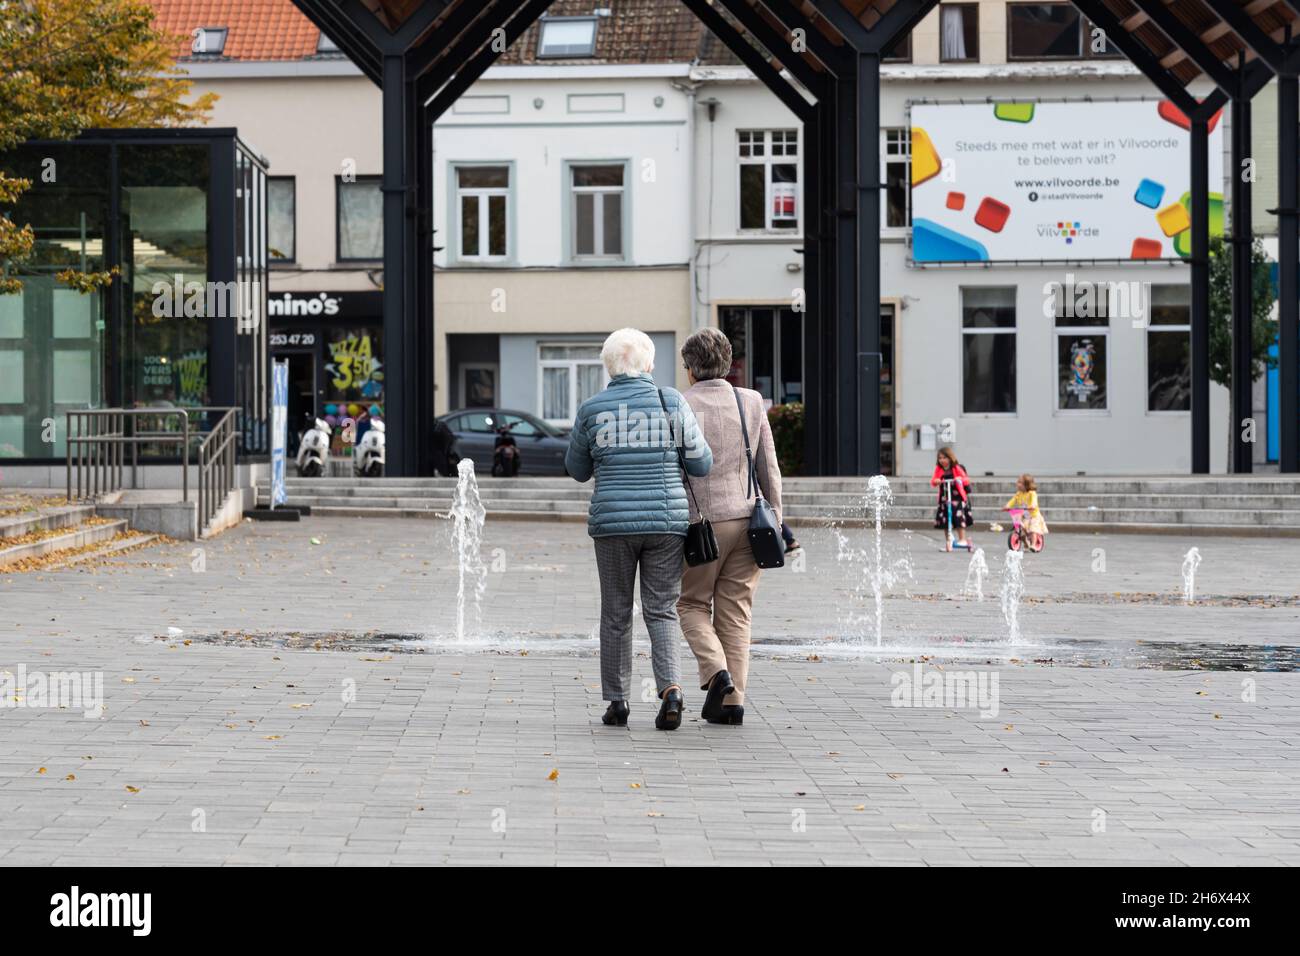 Vilvoorde, Regione fiamminga - Belgio - 10 17 2021: Due donne anziane che camminano a mano nella vecchia piazza del mercato Foto Stock